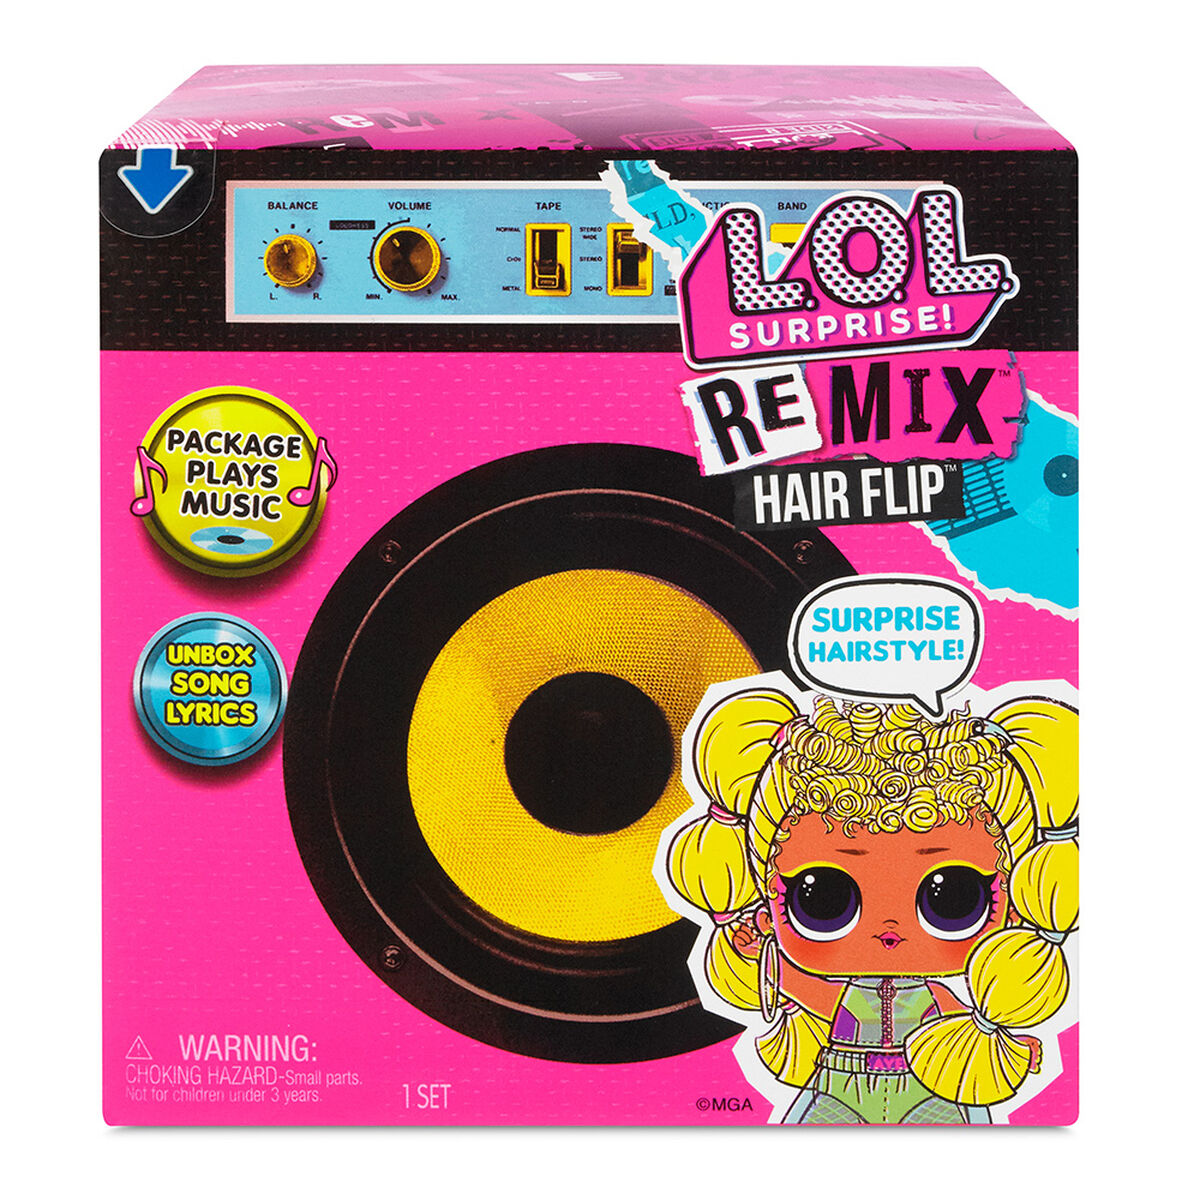 L.O.L Surprise Remix Hairflip Tots